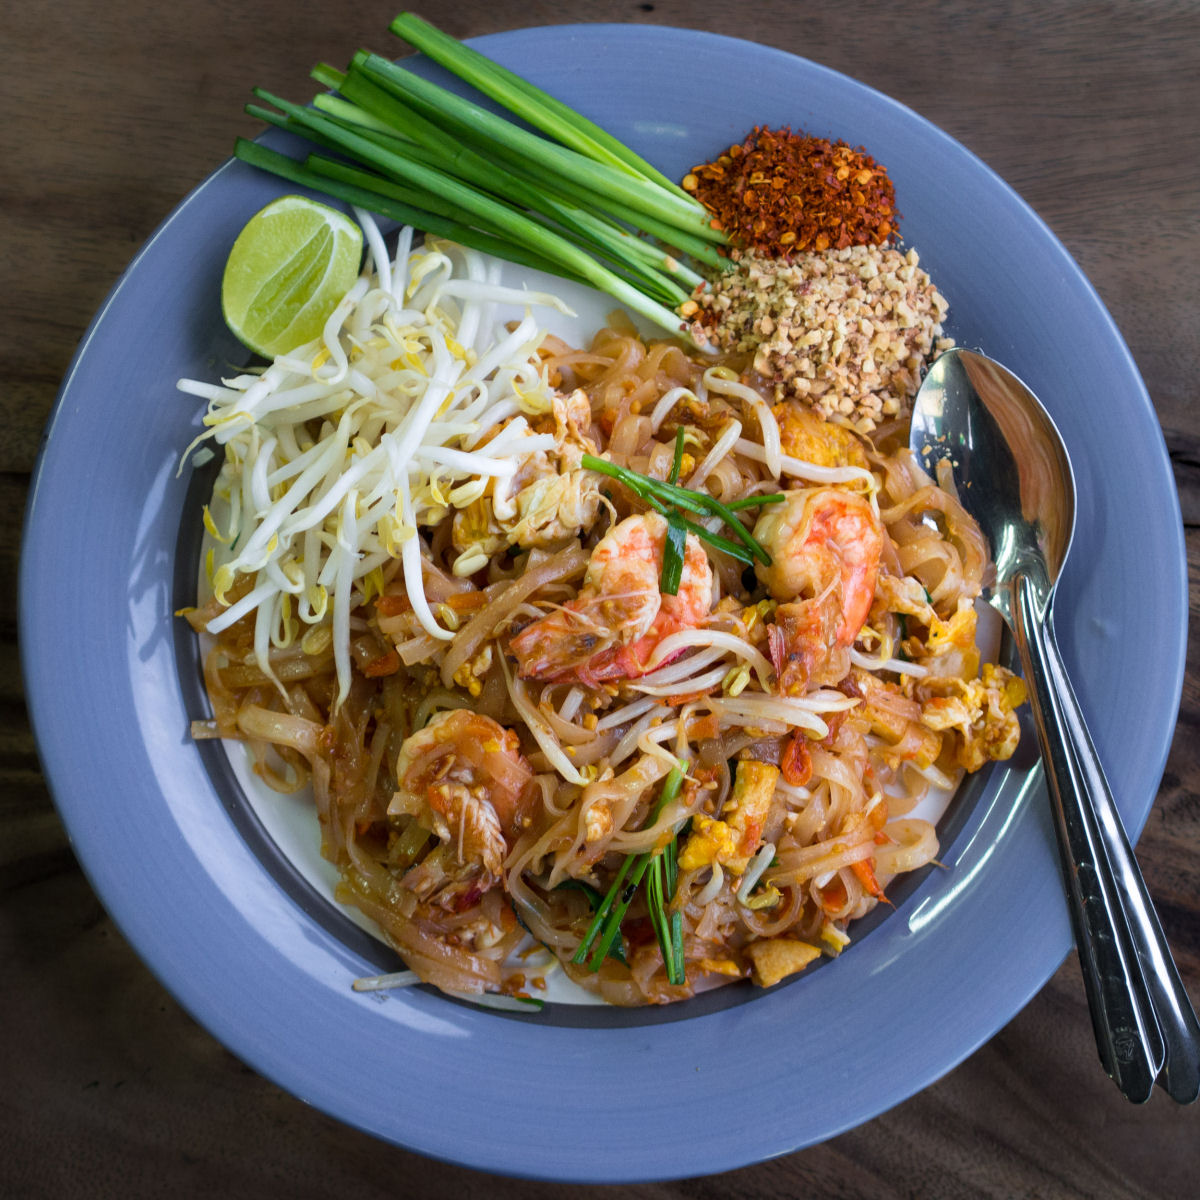 Deleite-se com esta vendedora de comida de rua fazendo um prato tradicional tailands